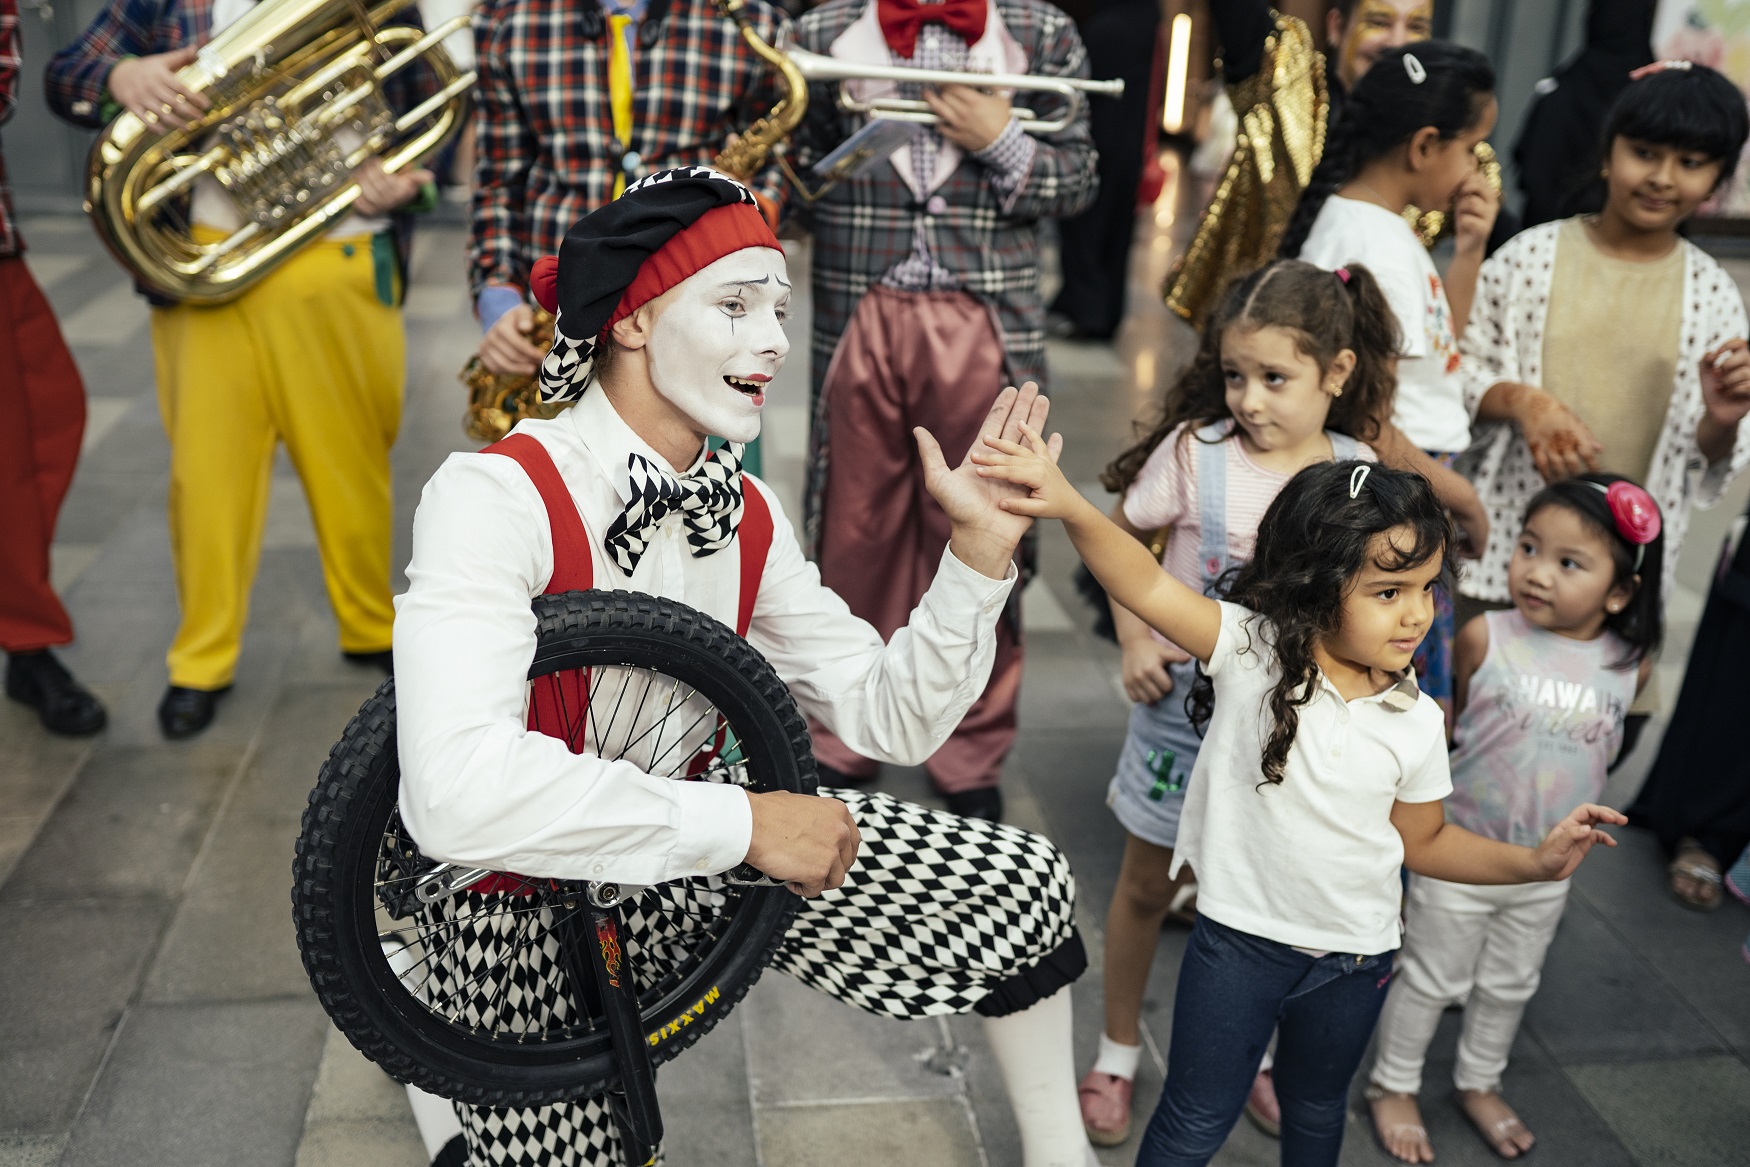 فعاليات ترفيهية ومسرحية في سيتي ووك خلال مفاجآت صيف دبي